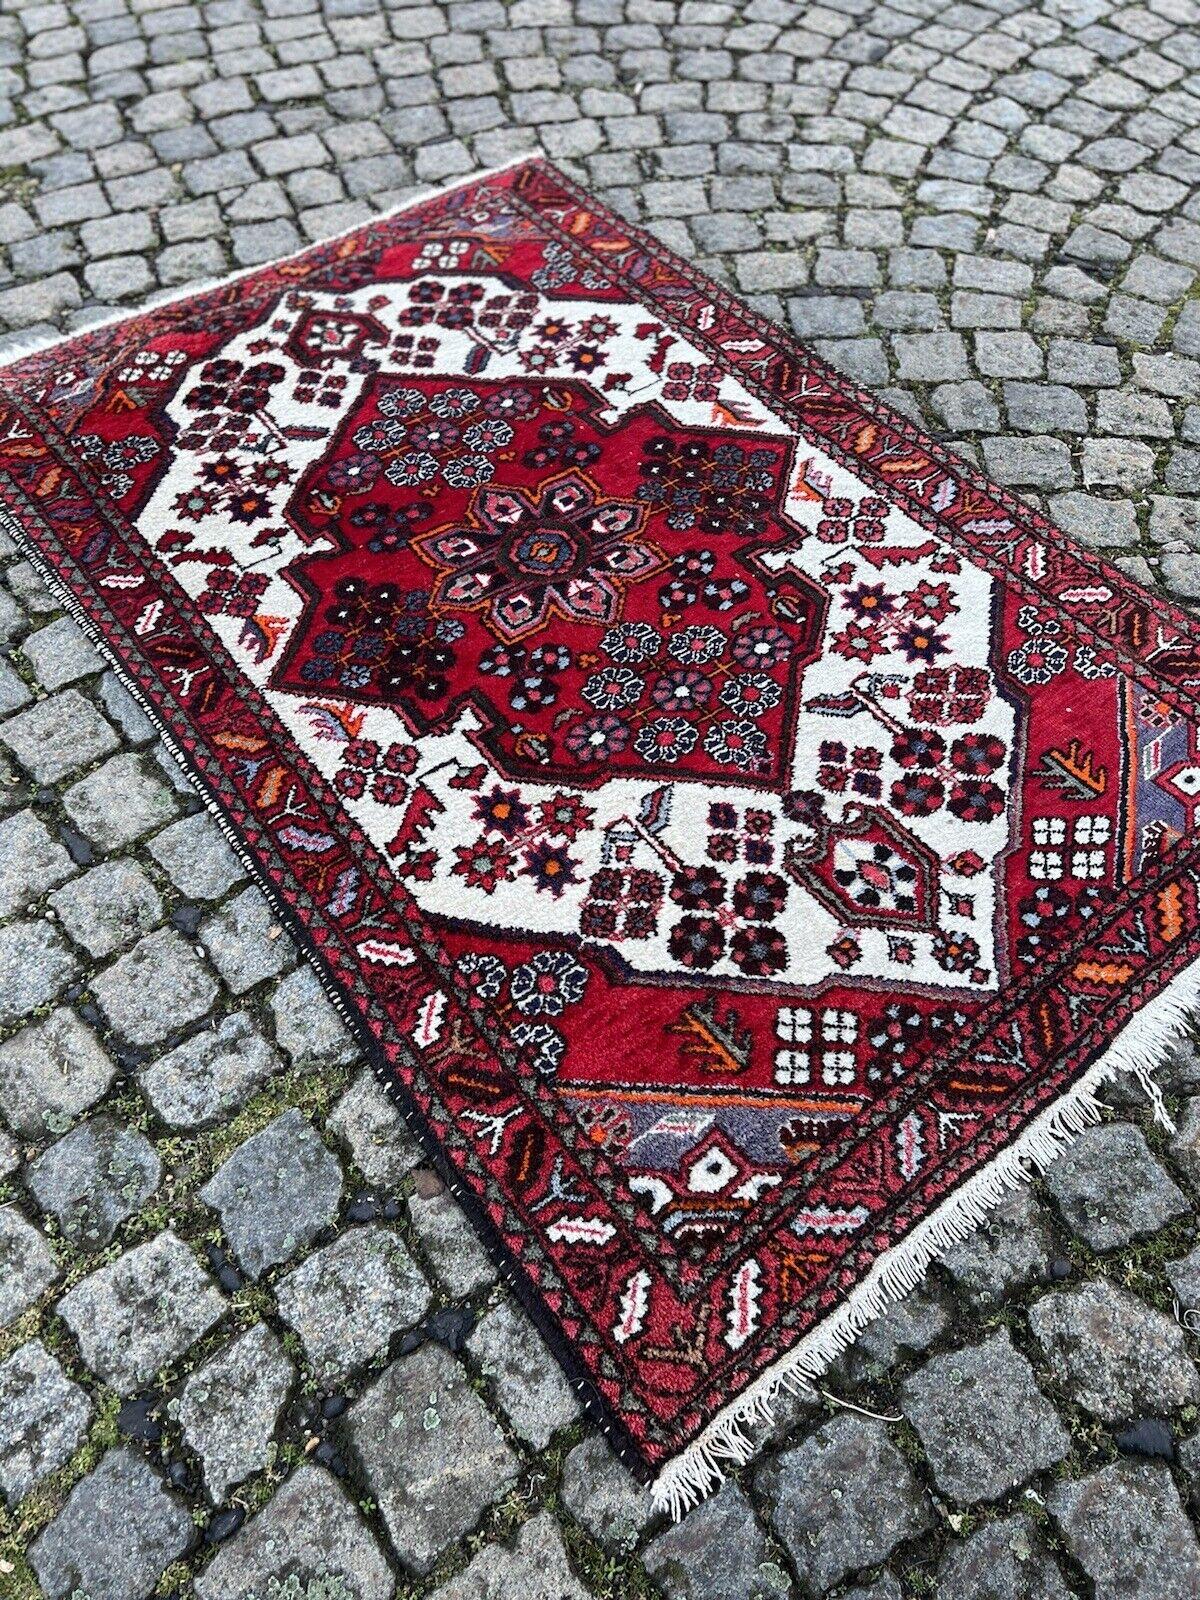 Handgefertigter Hamadan-Teppich im persischen Vintage-Stil

Mit diesem handgefertigten Hamadan-Teppich im persischen Vintage-Stil verleihen Sie Ihrem Zuhause einen Hauch von zeitloser Eleganz und klassischer Kunstfertigkeit. Dieser in den 1970er